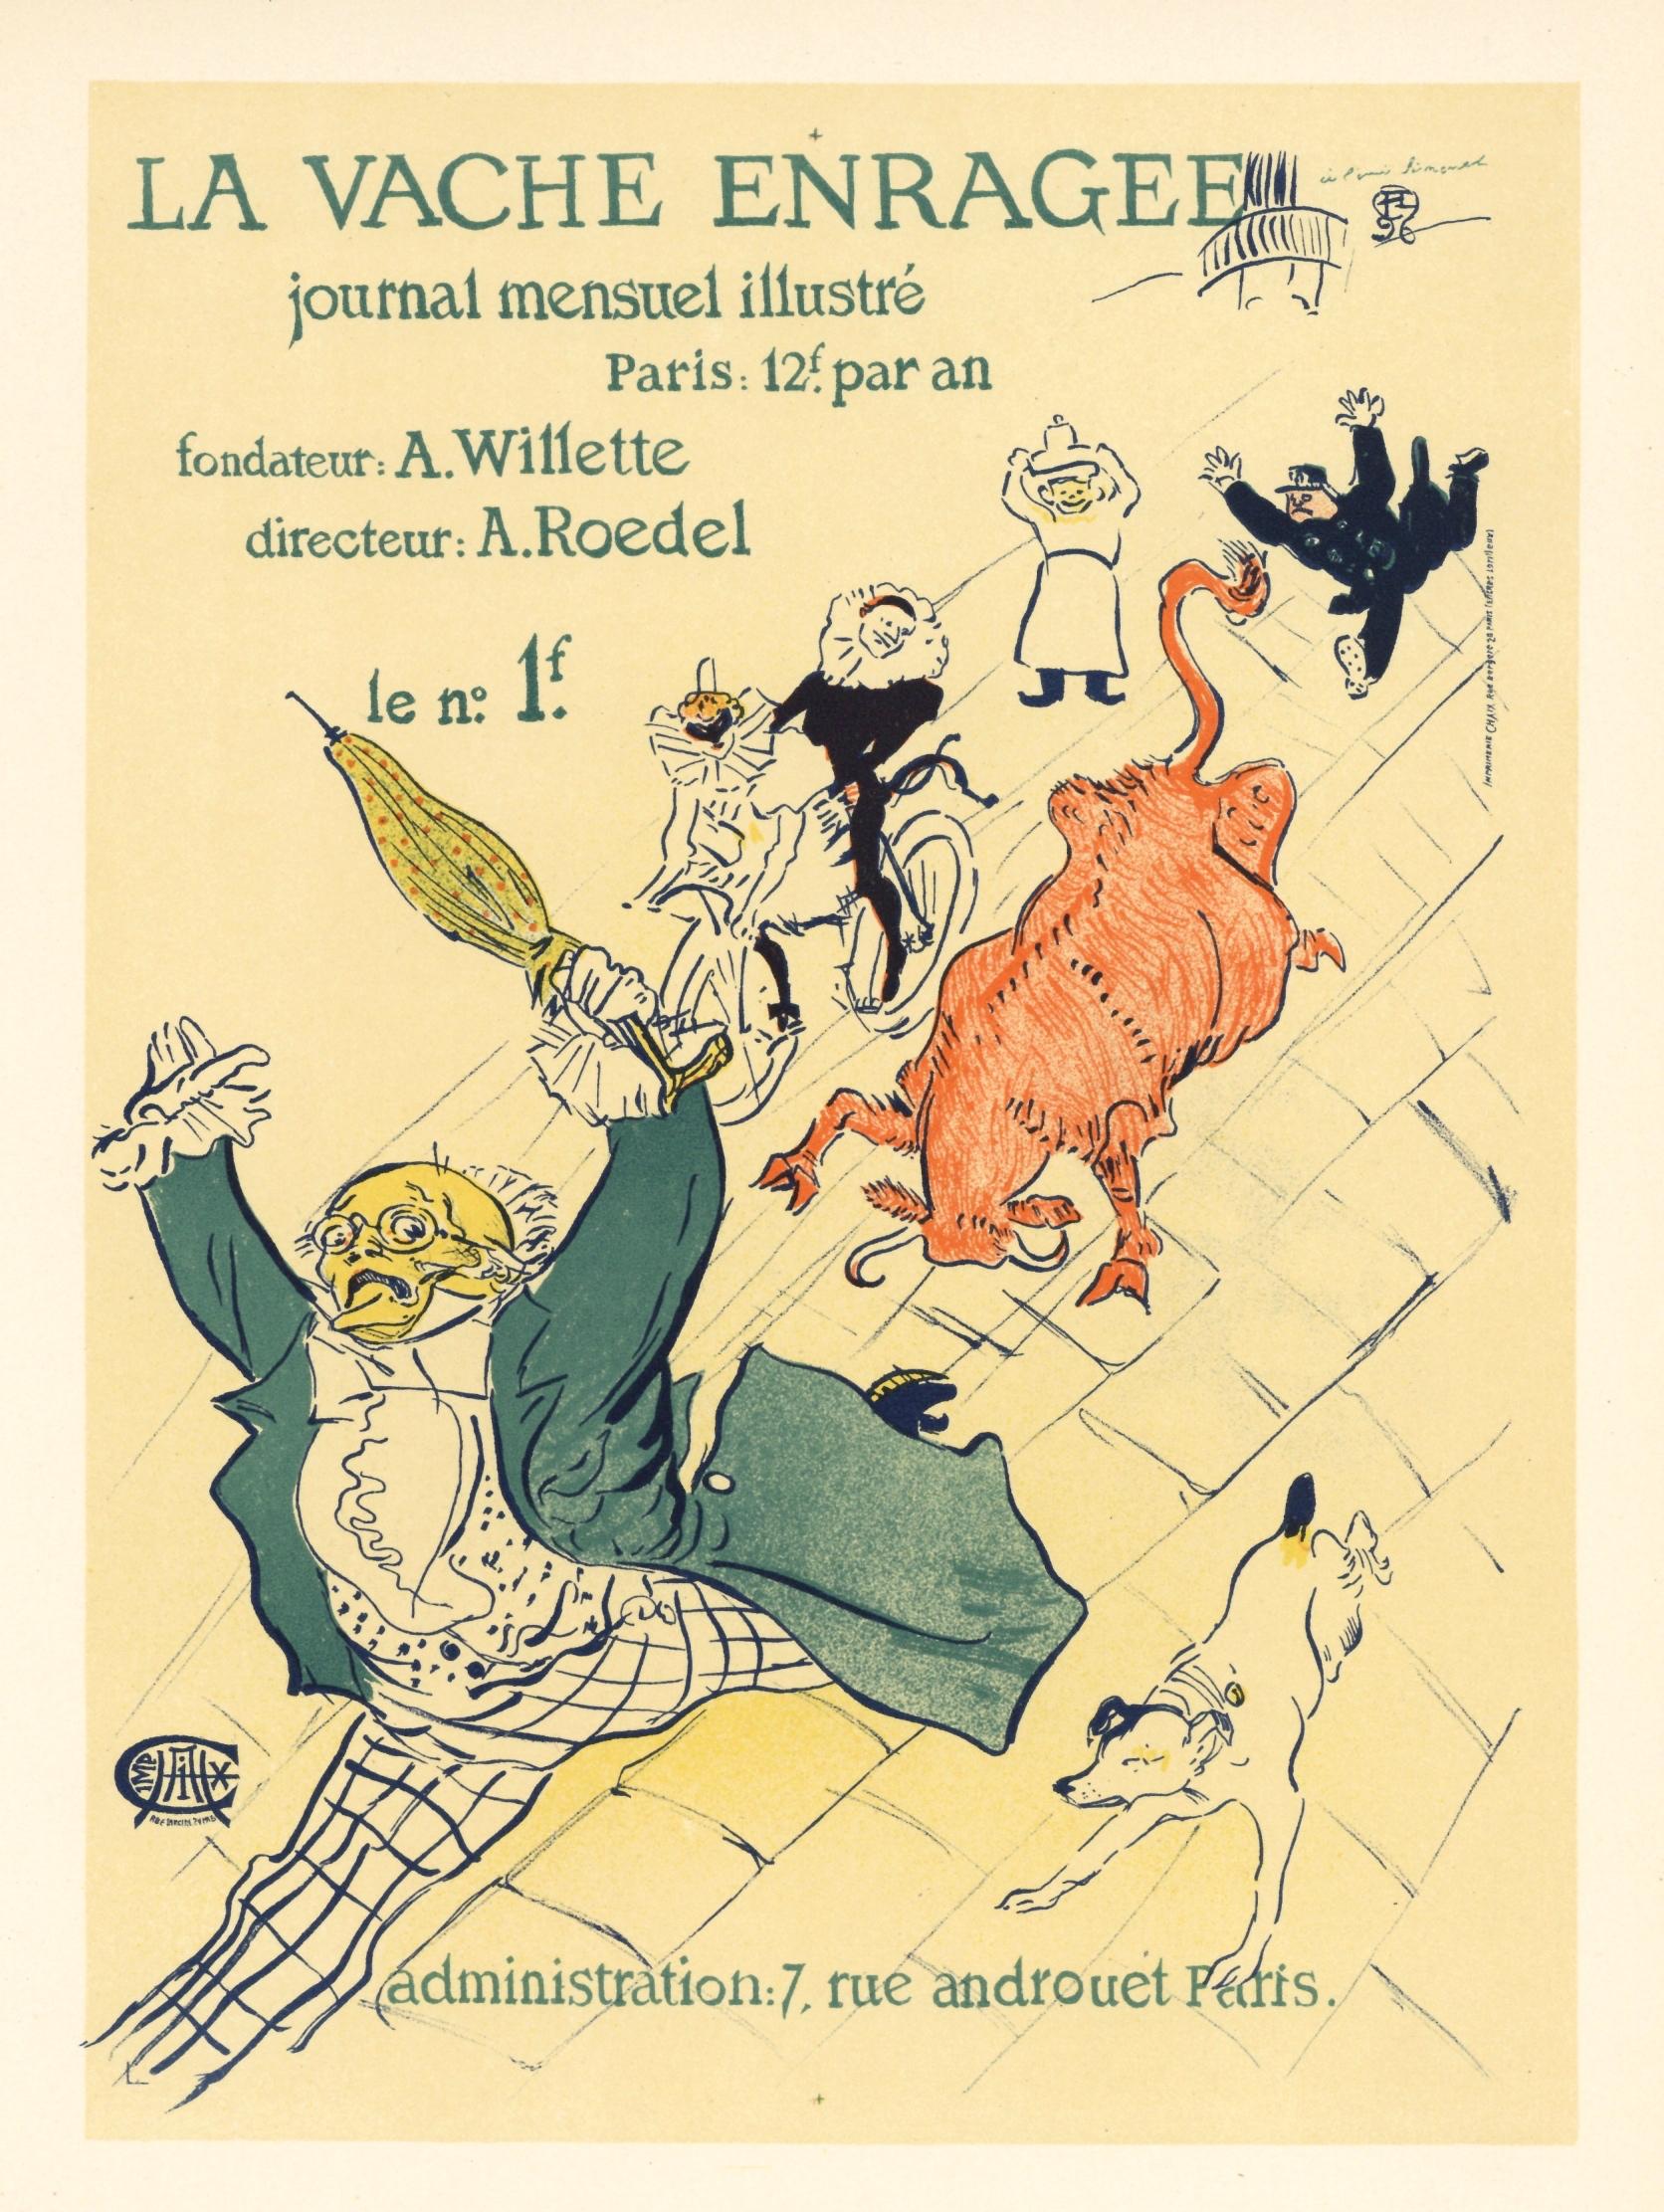 "La vache enragee" lithograph poster - Print by (After) Henri Toulouse Lautrec